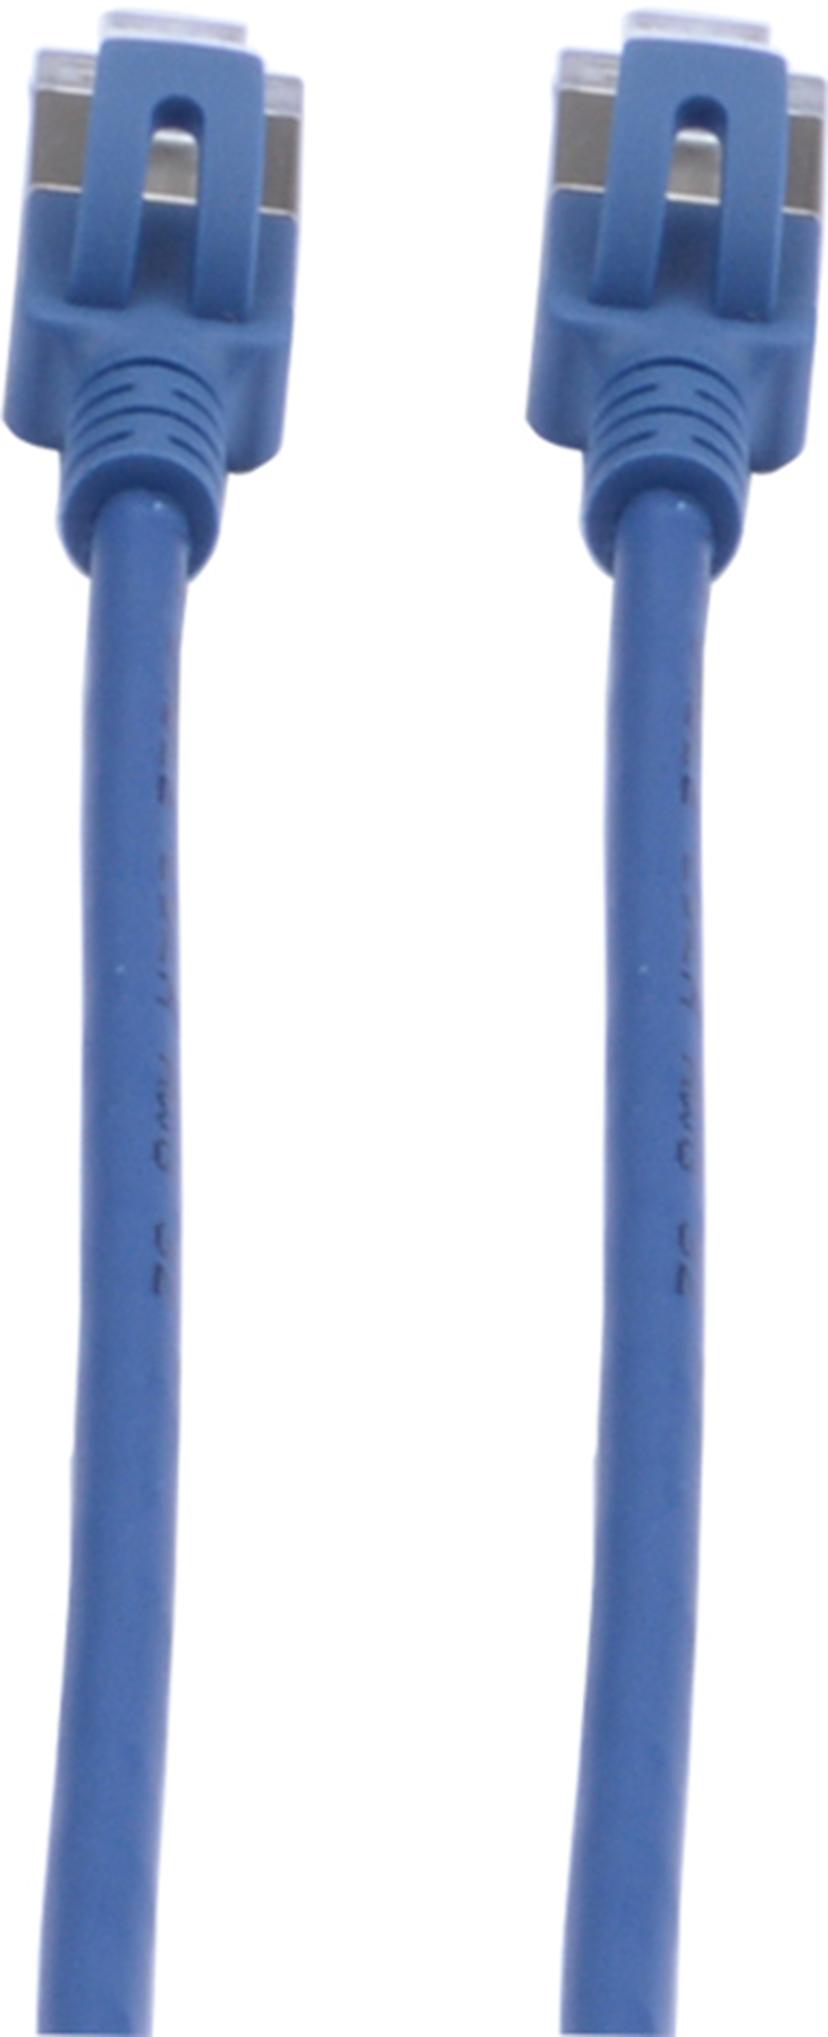 Prokord TP-Cable U/FTP CAT.6A Slim Lszh RJ45 0.5m Blue RJ-45 RJ-45 CAT 6a 0.5m Sininen